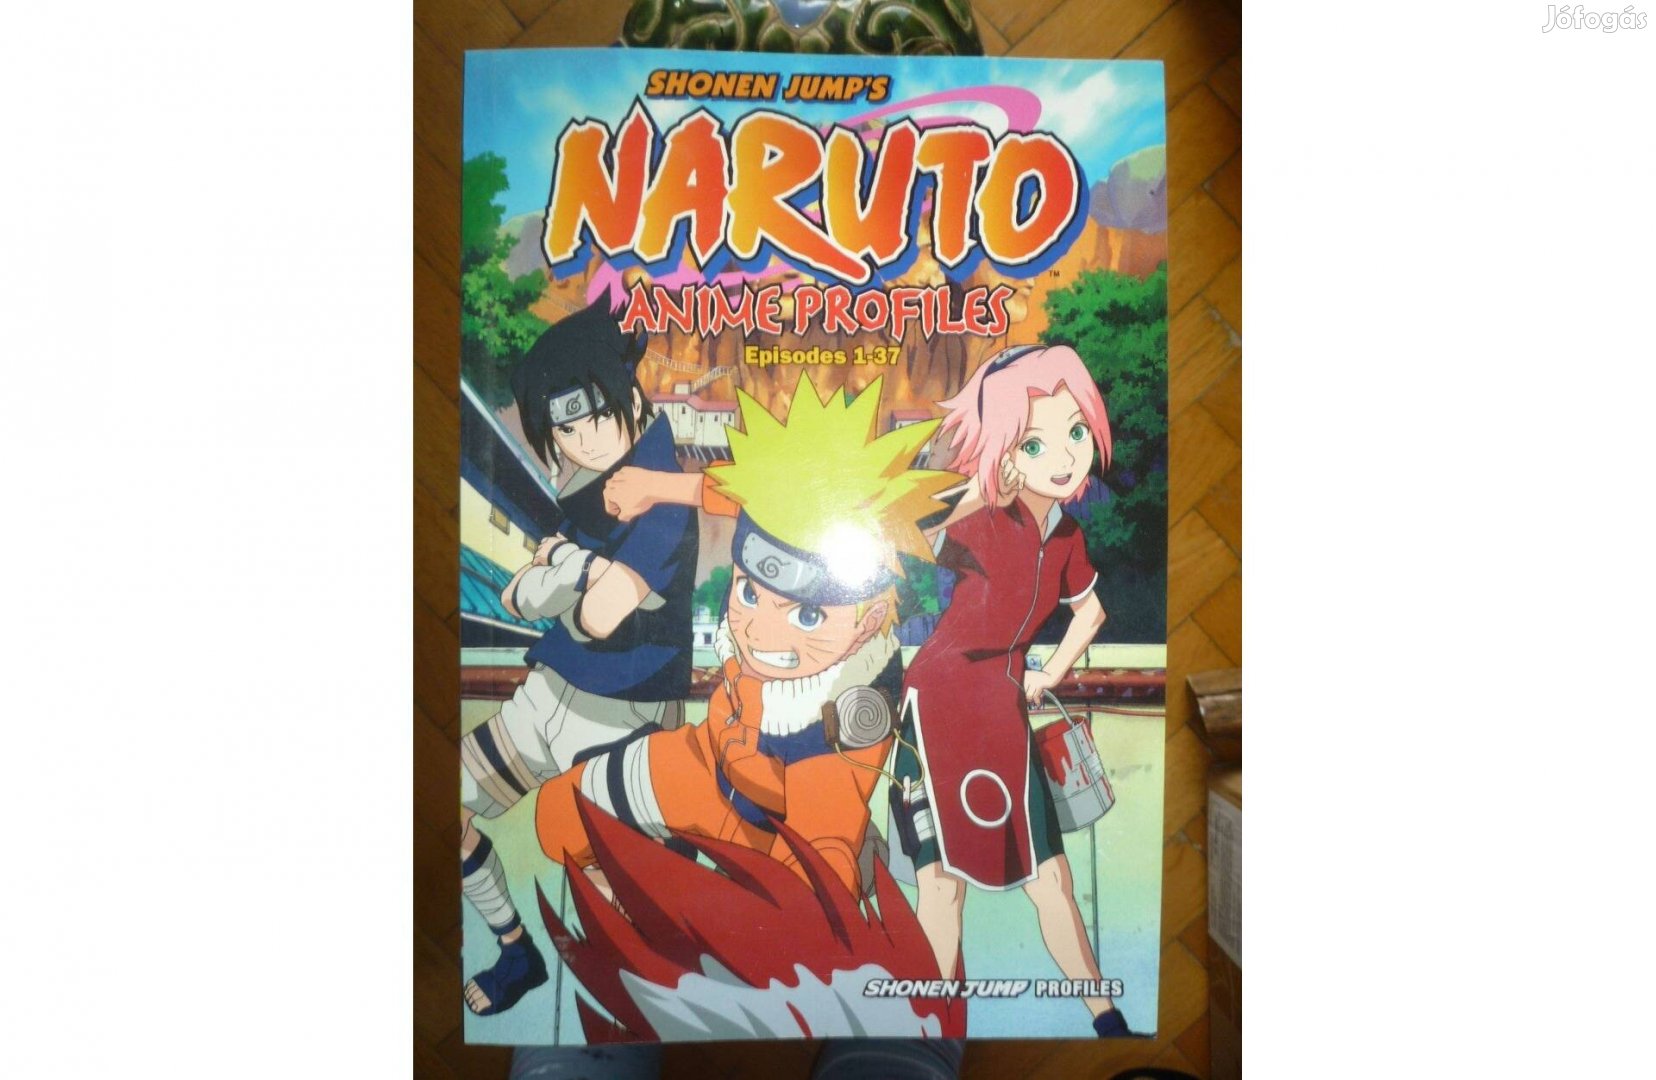 Shonen Jump's Naruto anime profiles 2006